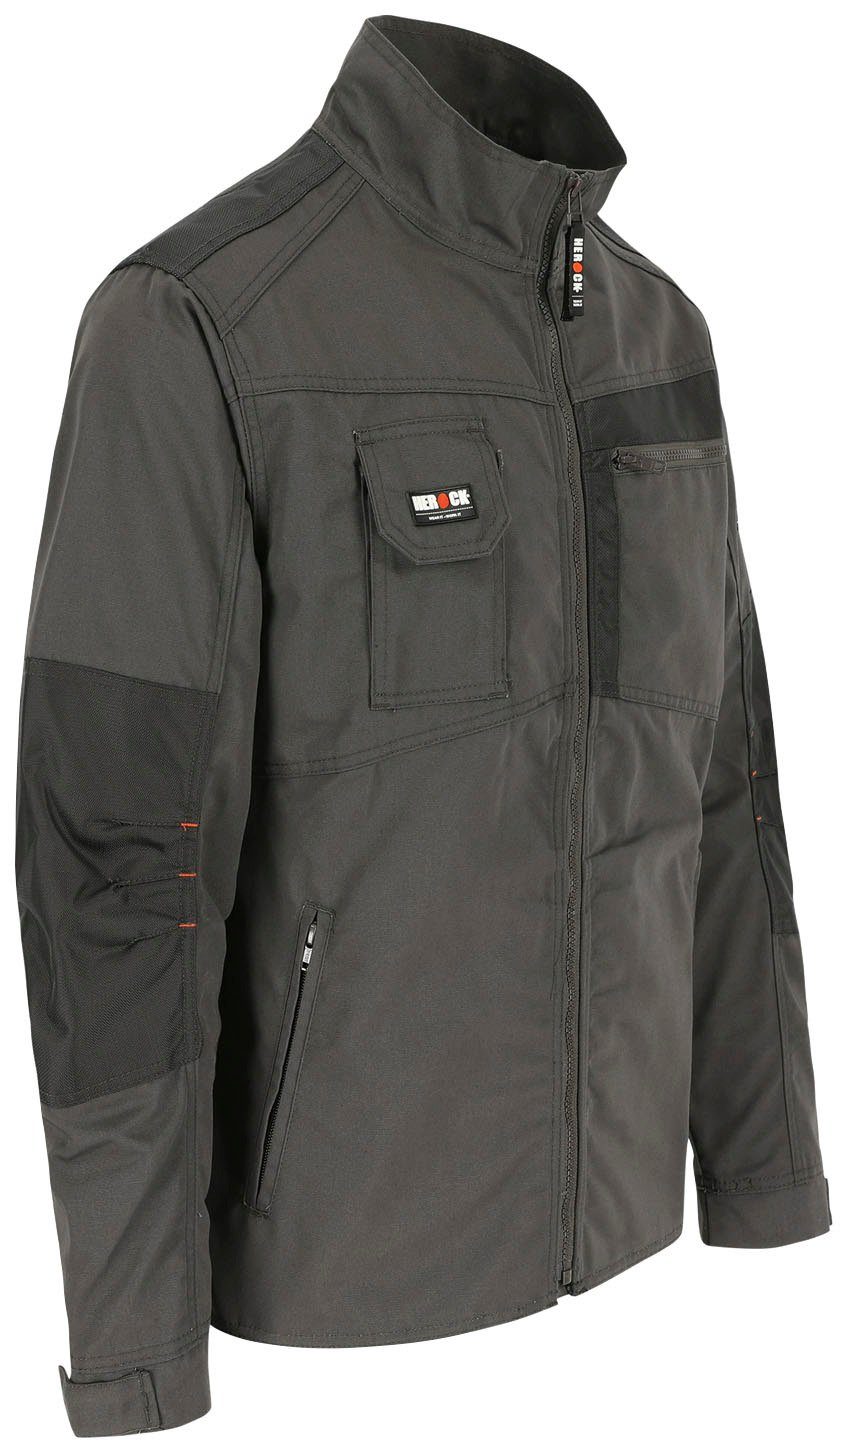 Herock Arbeitsjacke Anzar Jacke - grau 7 Taschen - Bündchen robust Wasserabweisend verstellbare 